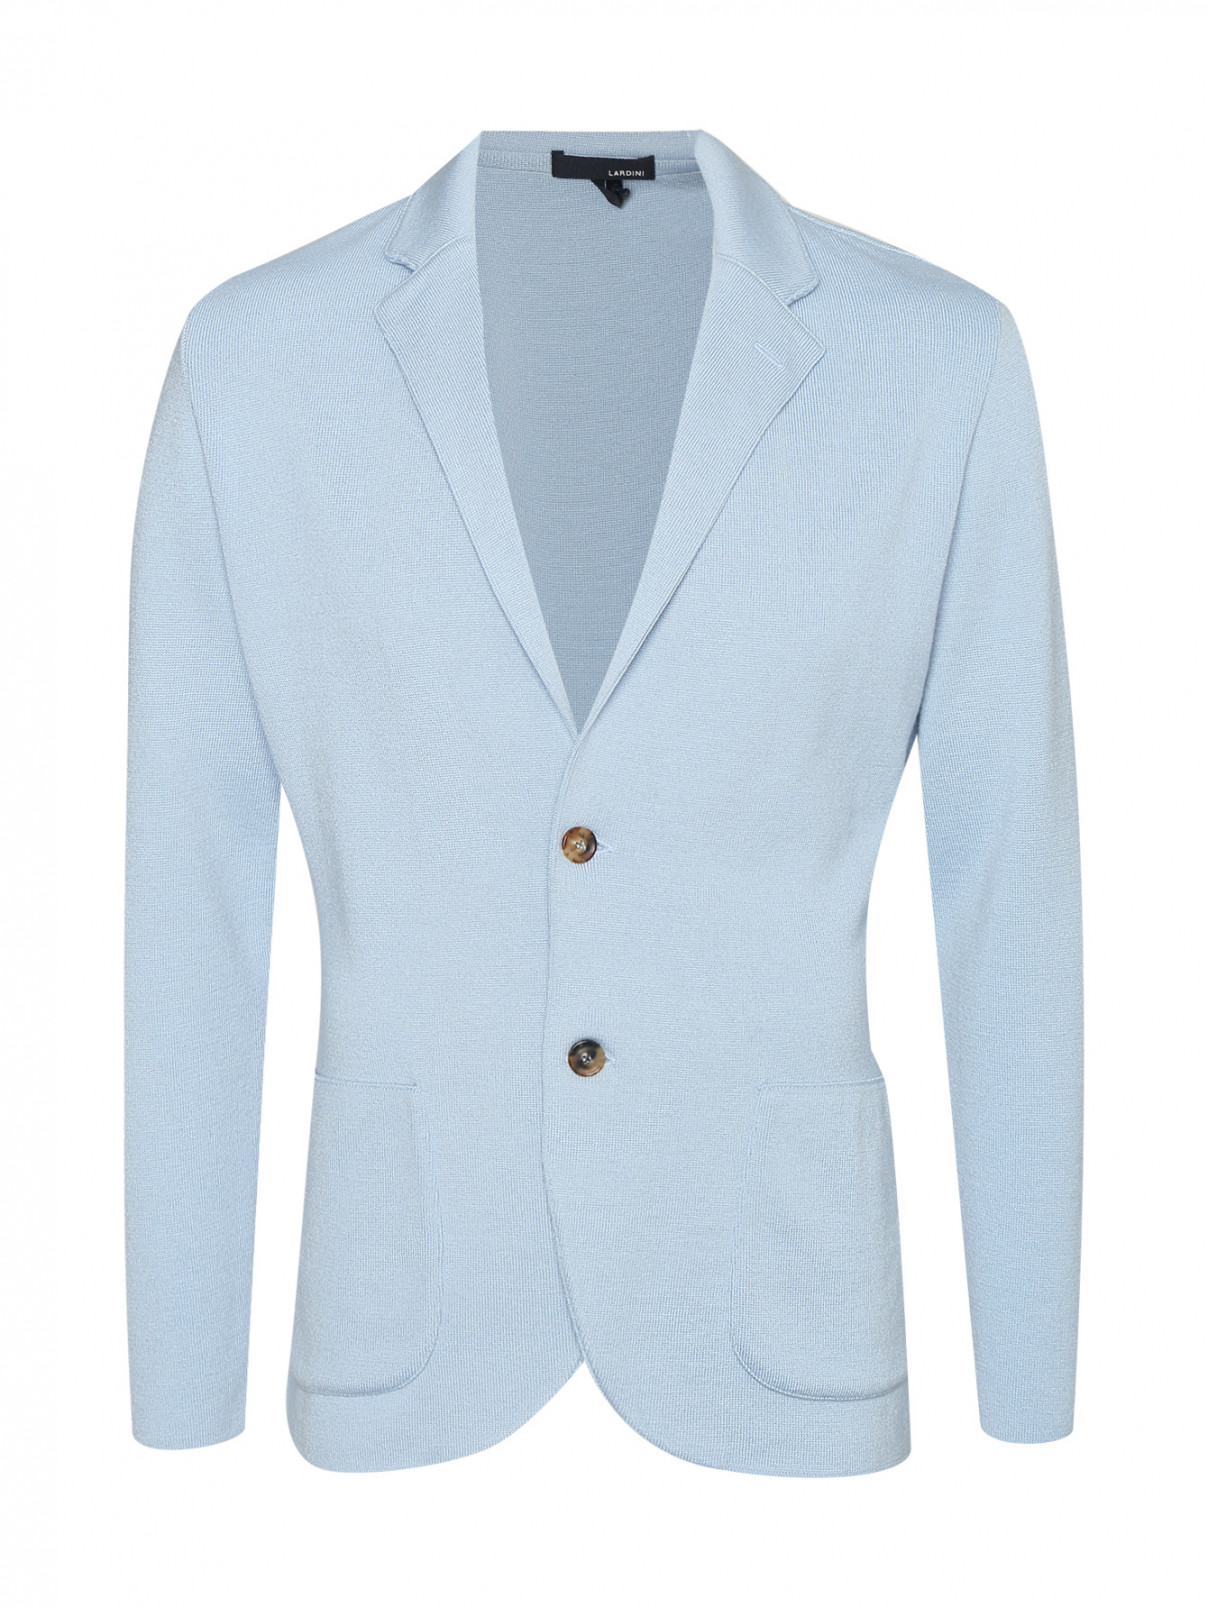 Трикотажный пиджак с карманами LARDINI  –  Общий вид  – Цвет:  Синий